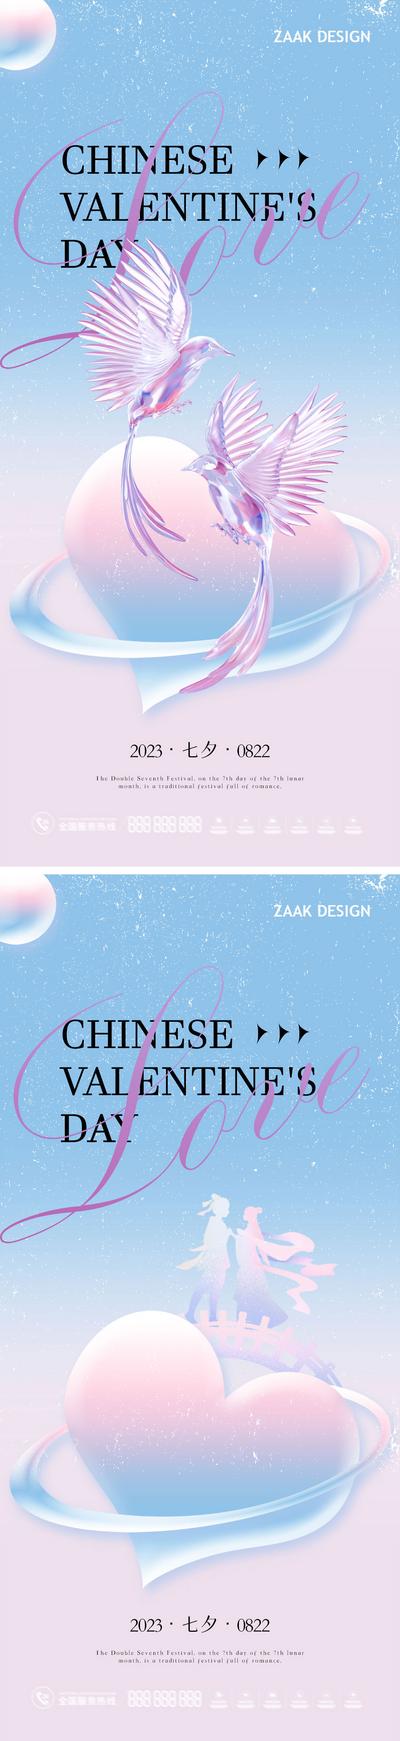 南门网 海报 中国传统节日 七夕节 情人节 浪漫 创意 唯美 系列